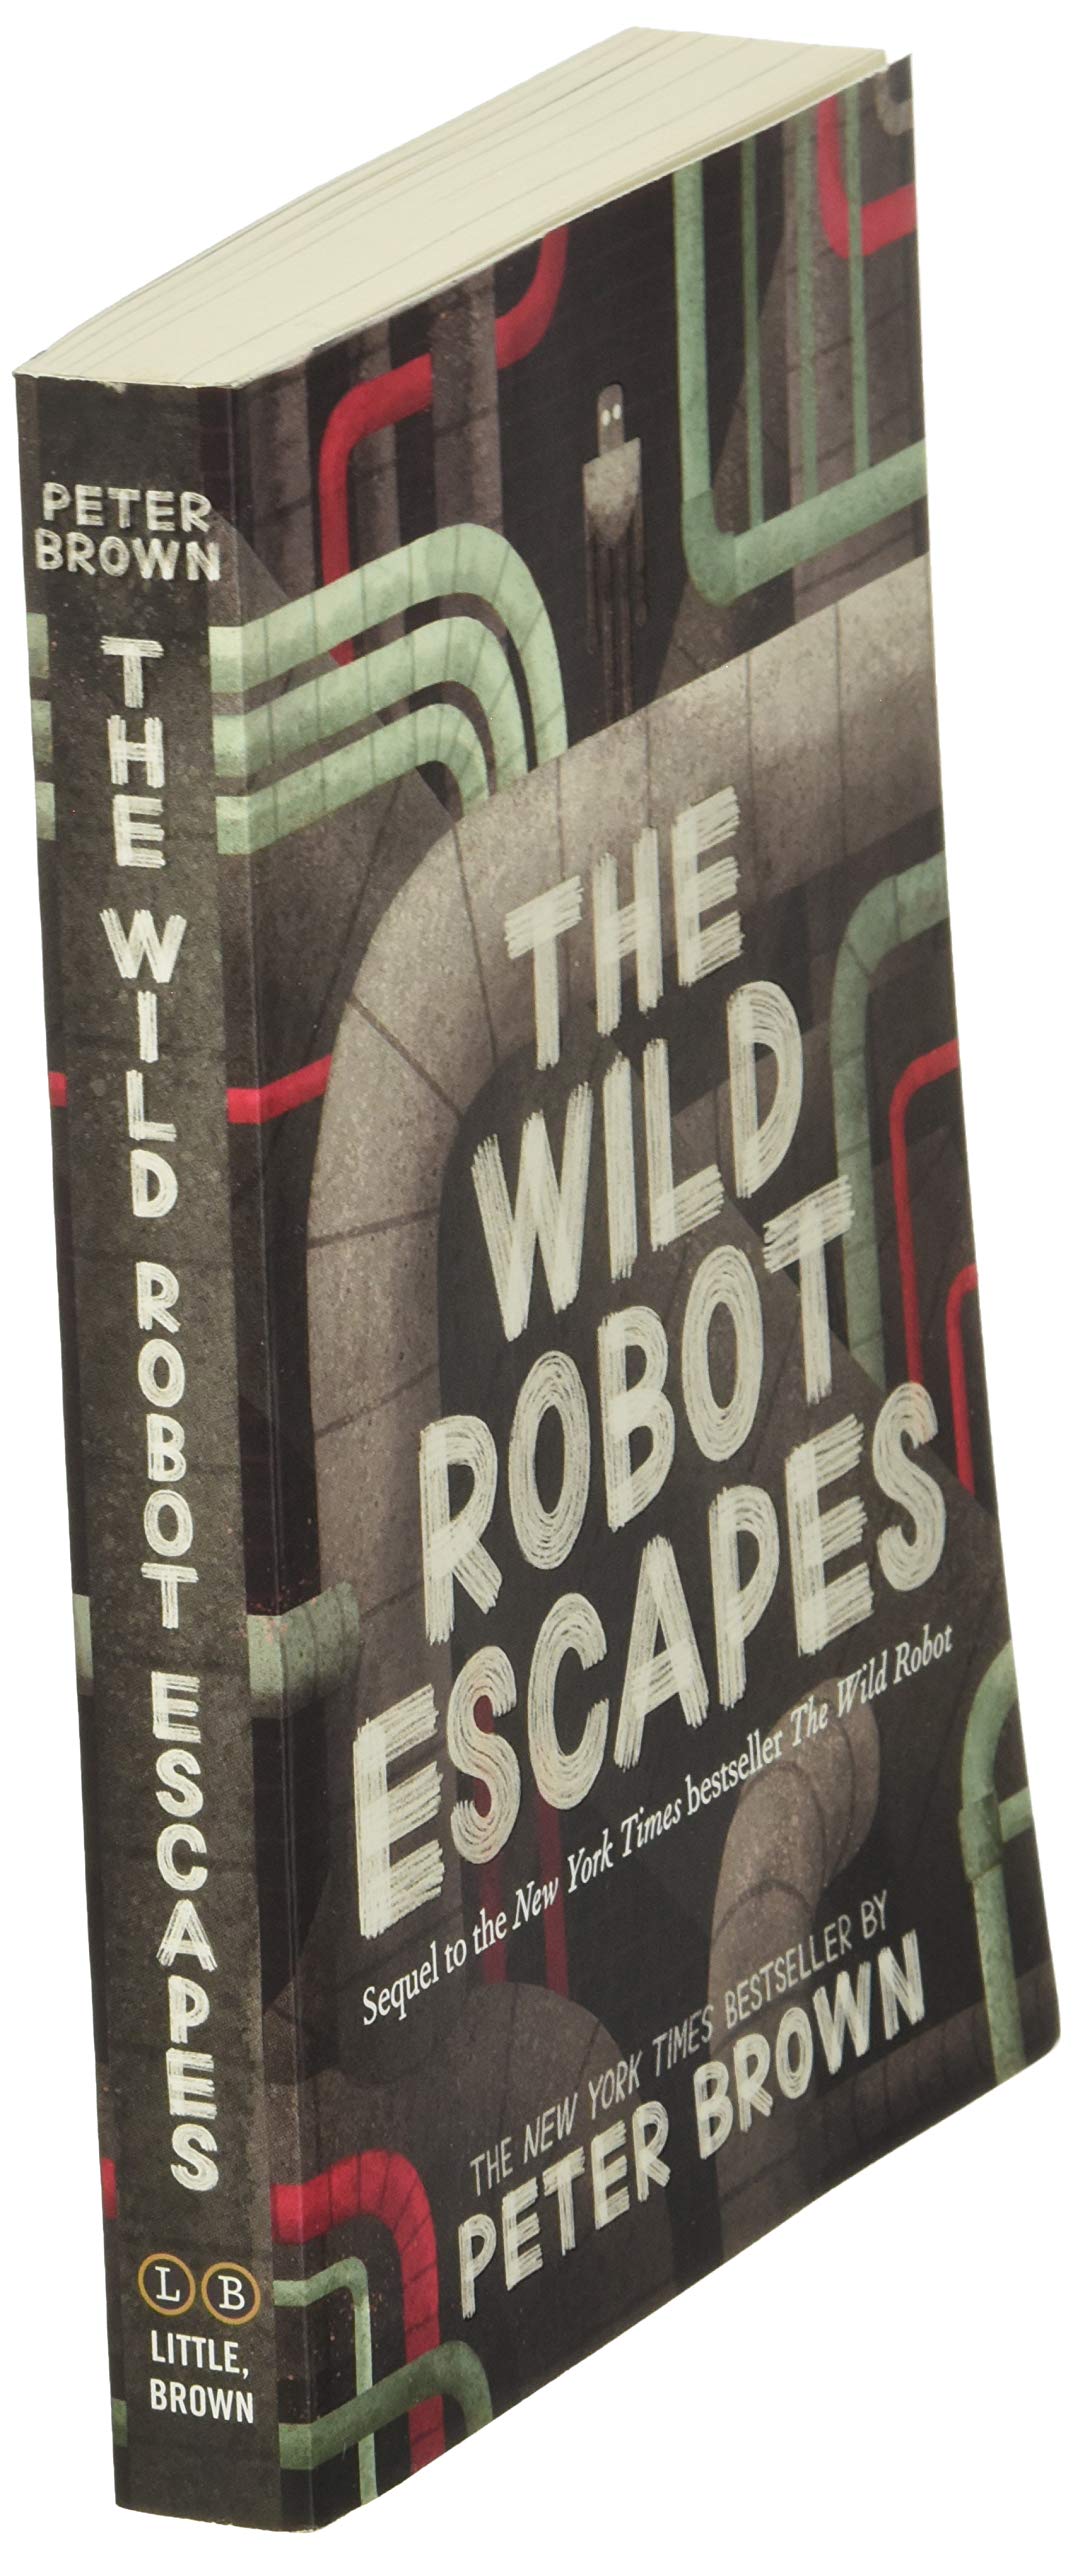 The Wild Robot Escapes (The Wild Robot, 2)